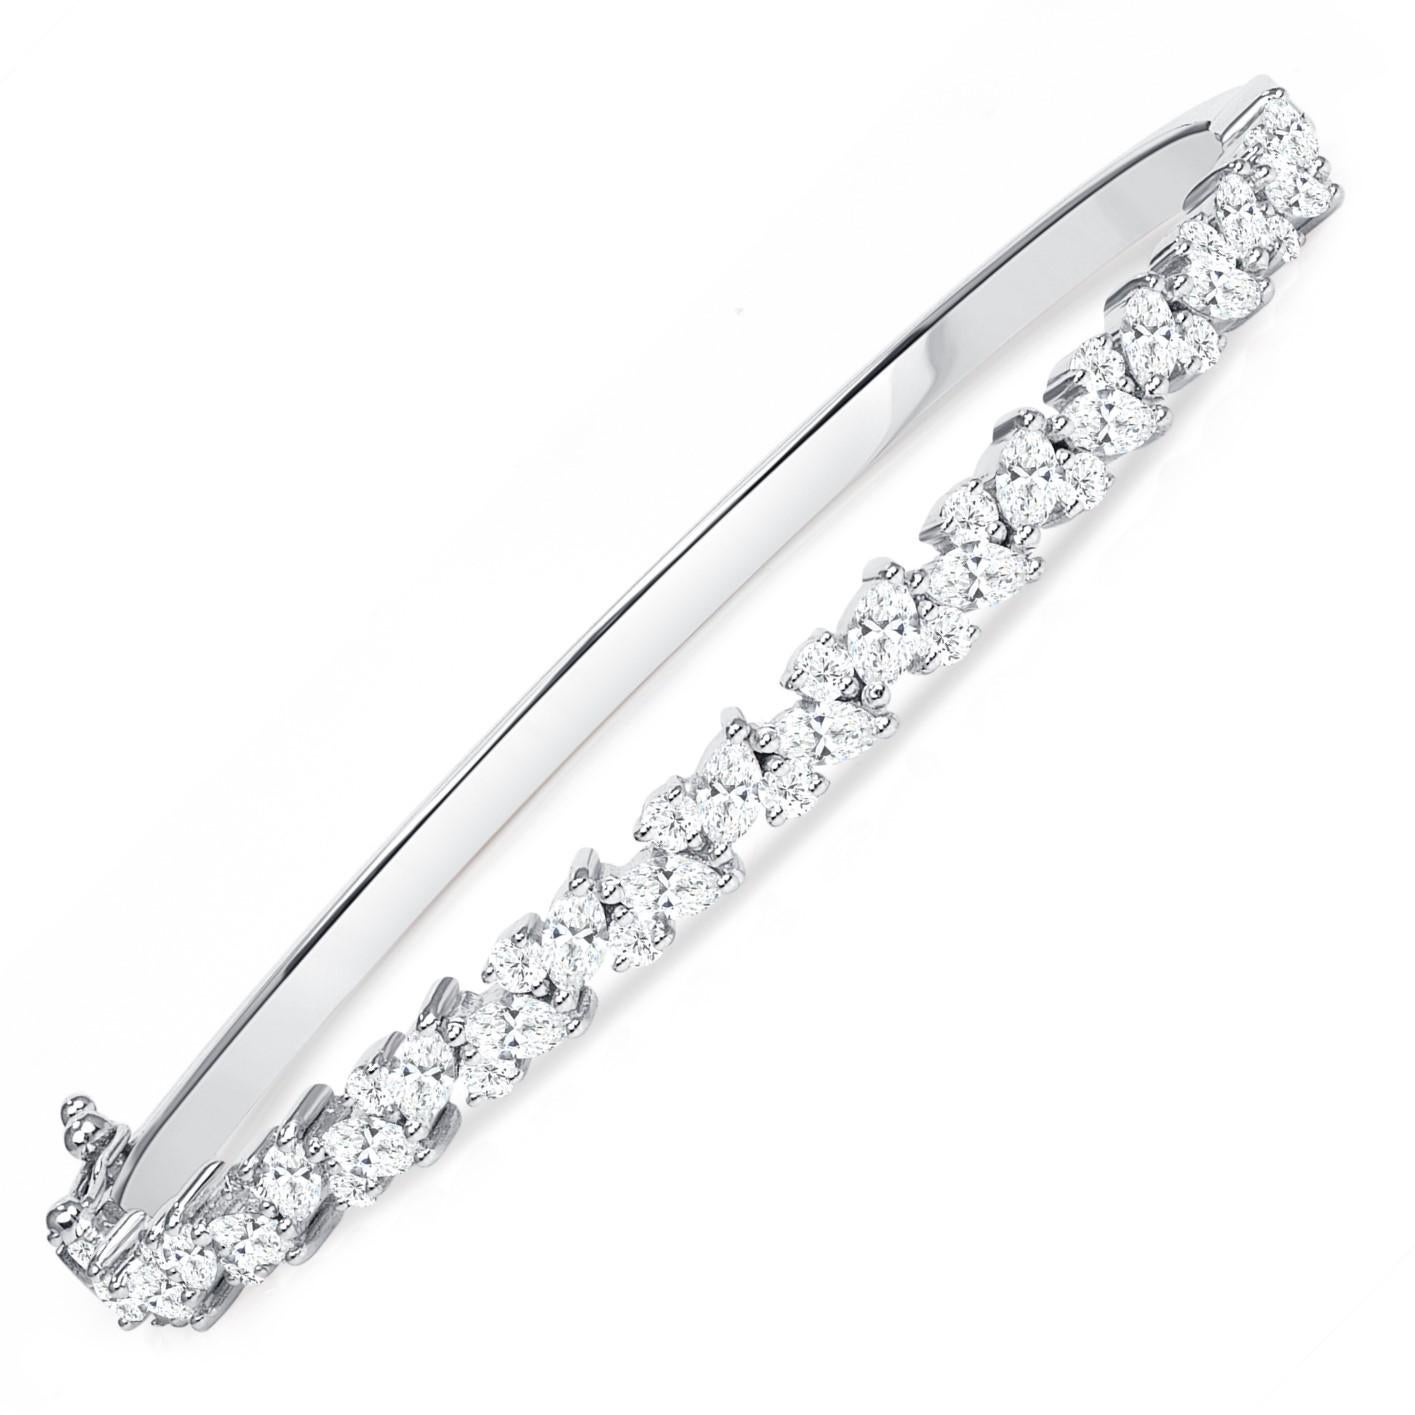 Bracelet massif en or blanc 18K avec diamant marquise  Combiné avec des diamants ronds

Bracelet solide avec une rangée de diamants brillants, ce bangle au design de vigne est un bijou intemporel et éternellement élégant. La combinaison de diamants